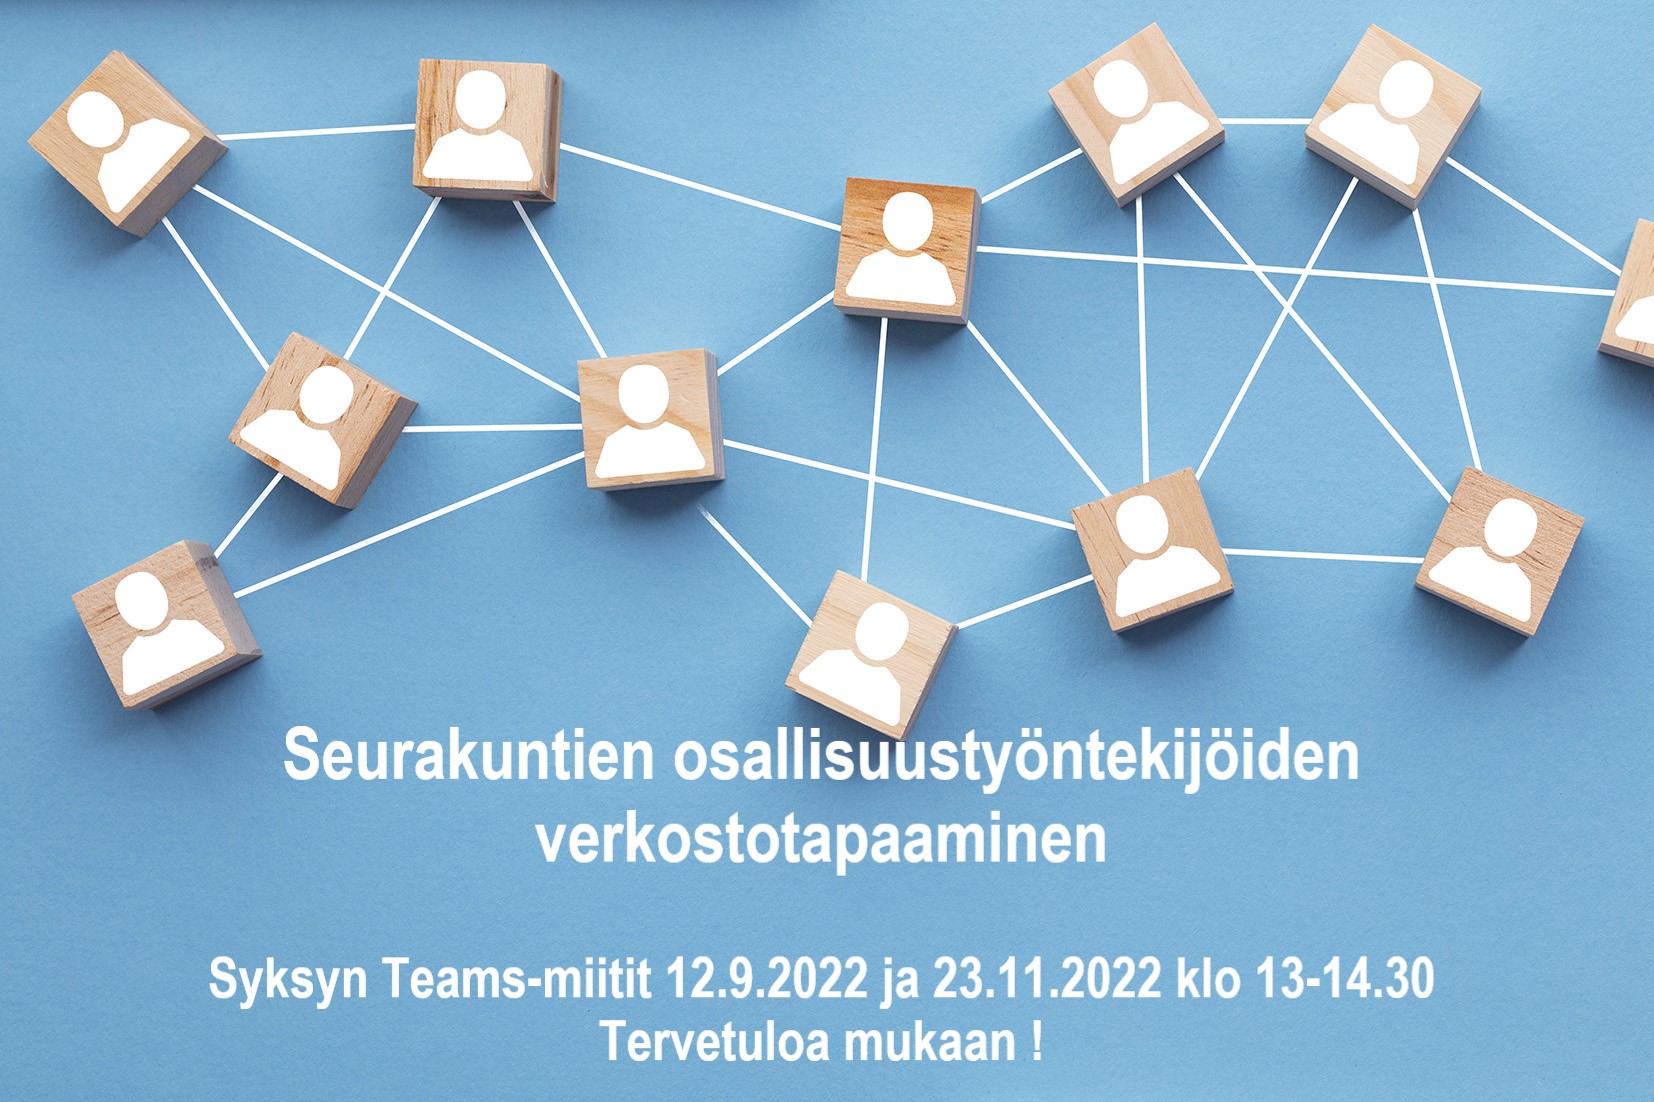 Seurakuntien osallisuustyön verkostotapaamiset neljä kertaa vuodessa Teams-alustalla. Ilmoittaudu mukaan sähköpostitse sirpa.syrja@evl.fi